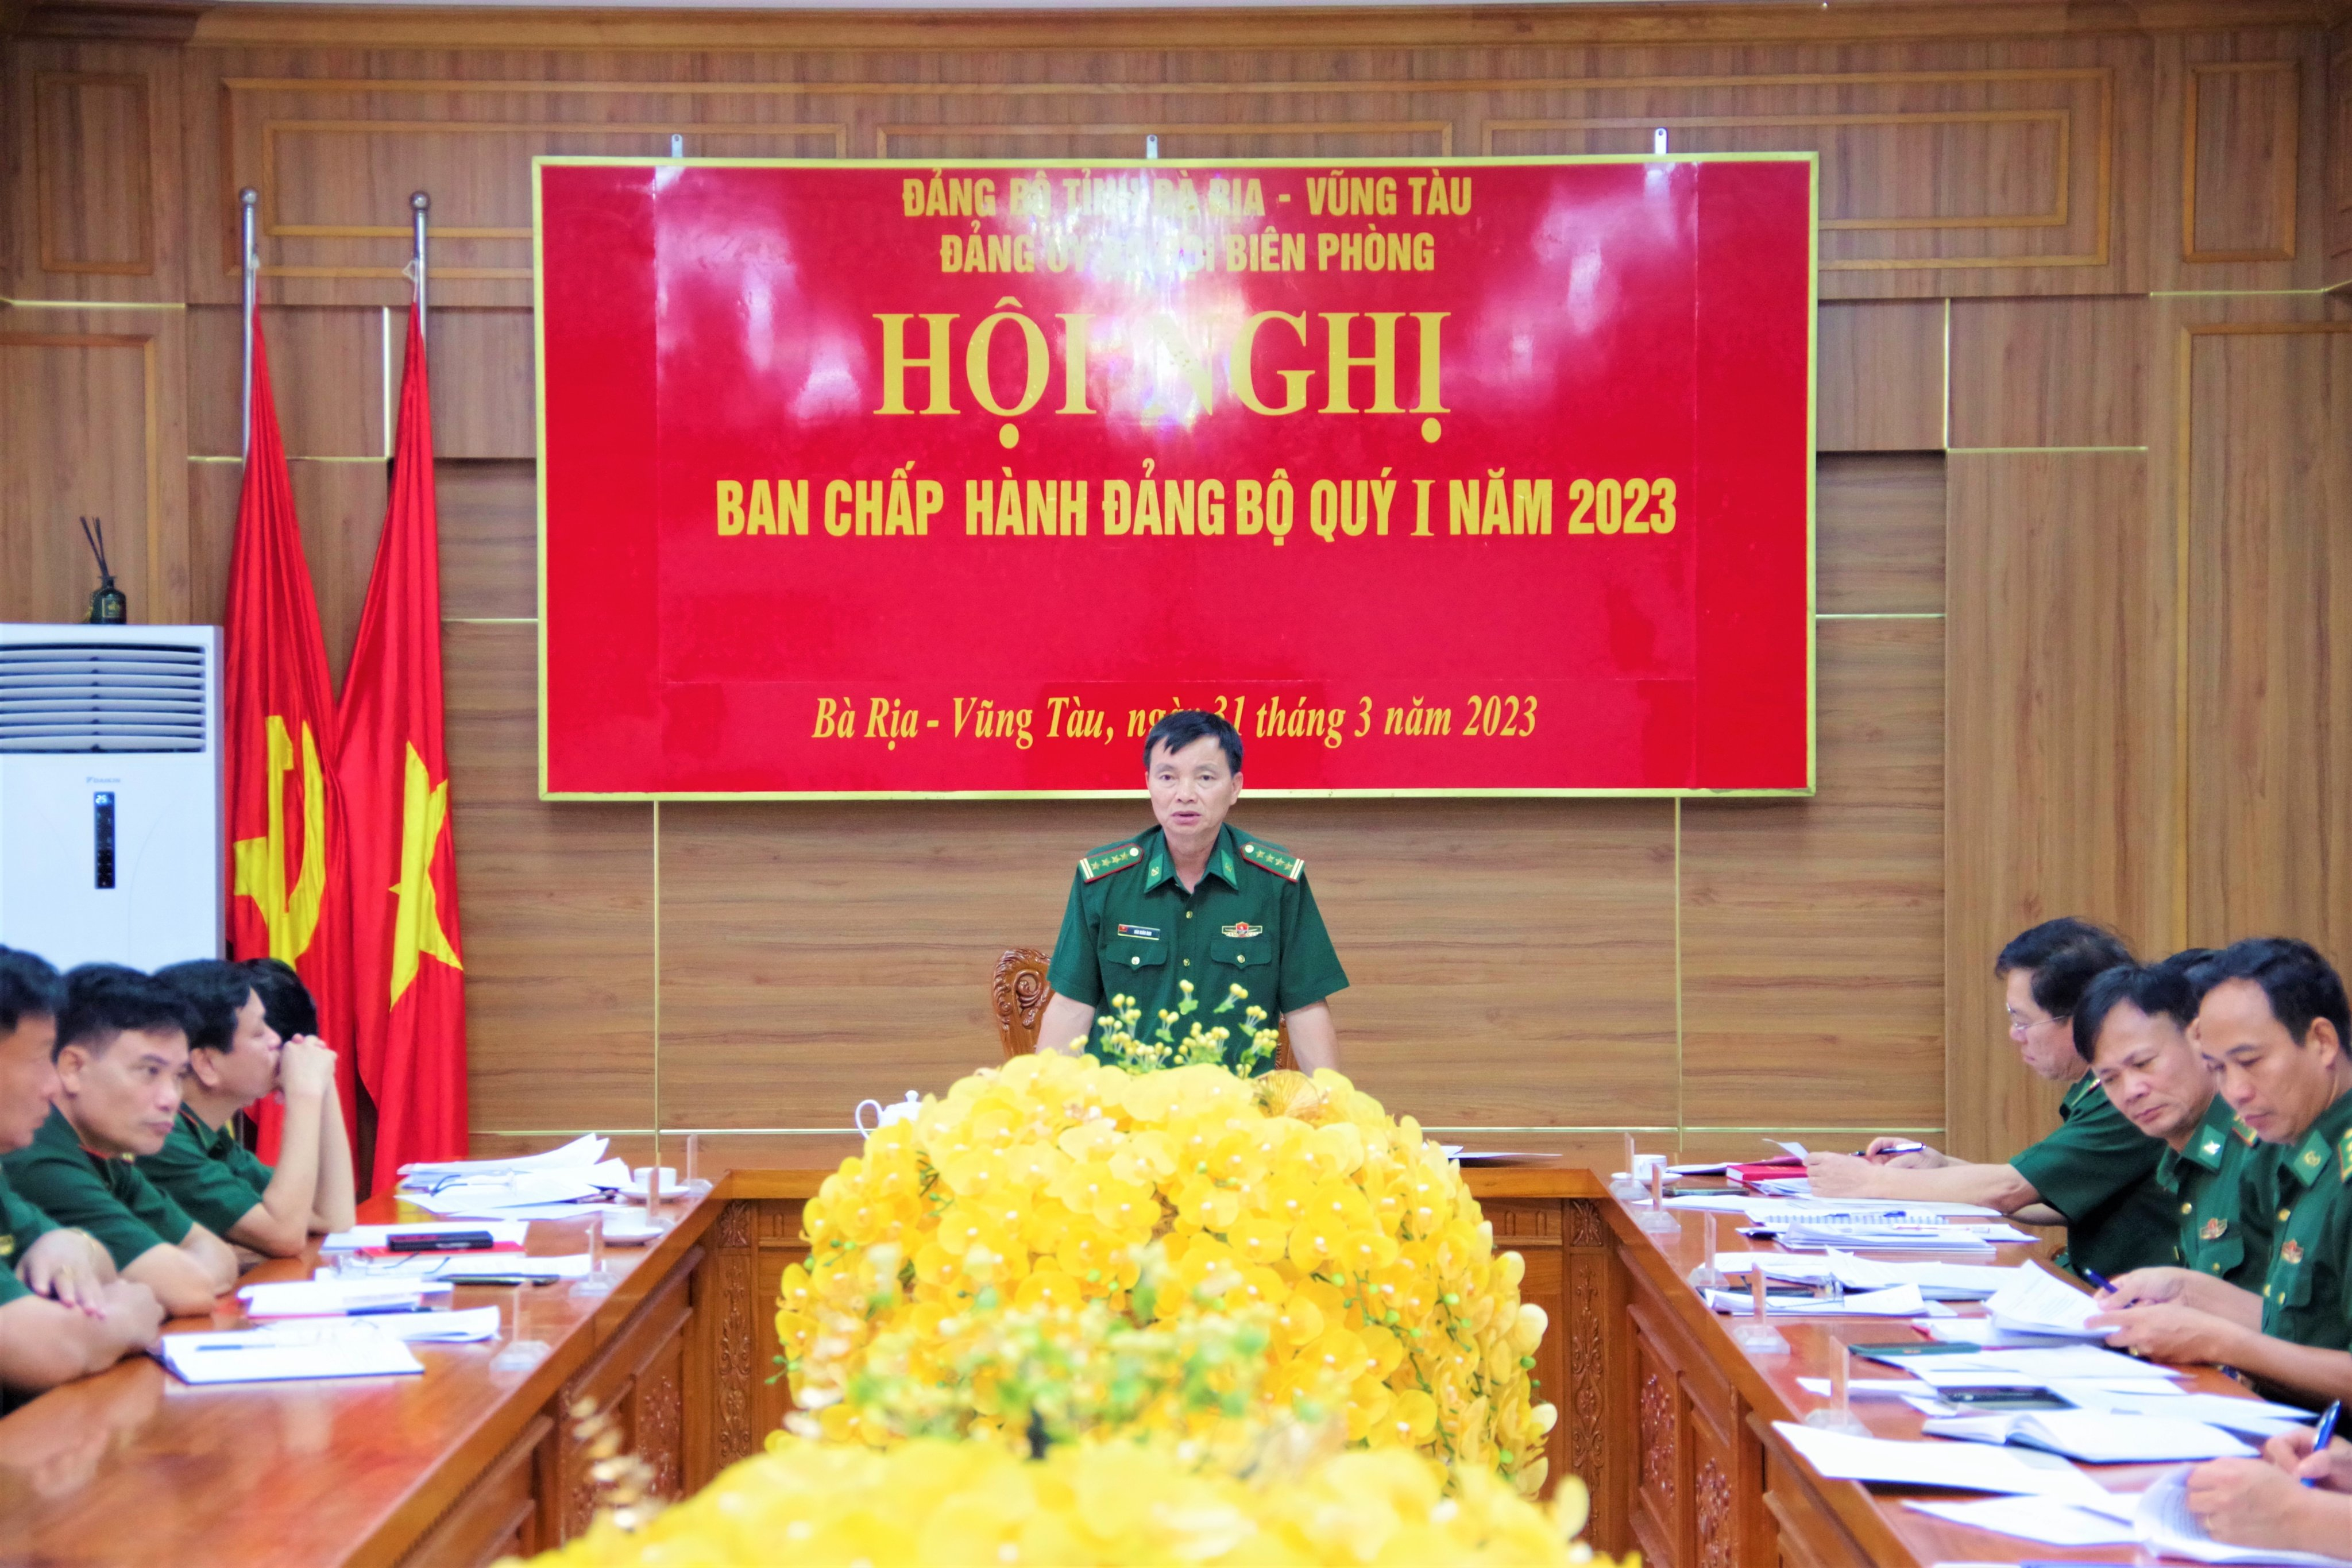 Đại tá Đào Xuân Ánh, Bí thư Đảng ủy, Chính ủy BĐBP tỉnh Bà Rịa – Vũng Tàu phát biểu kết luận tại hội nghị.